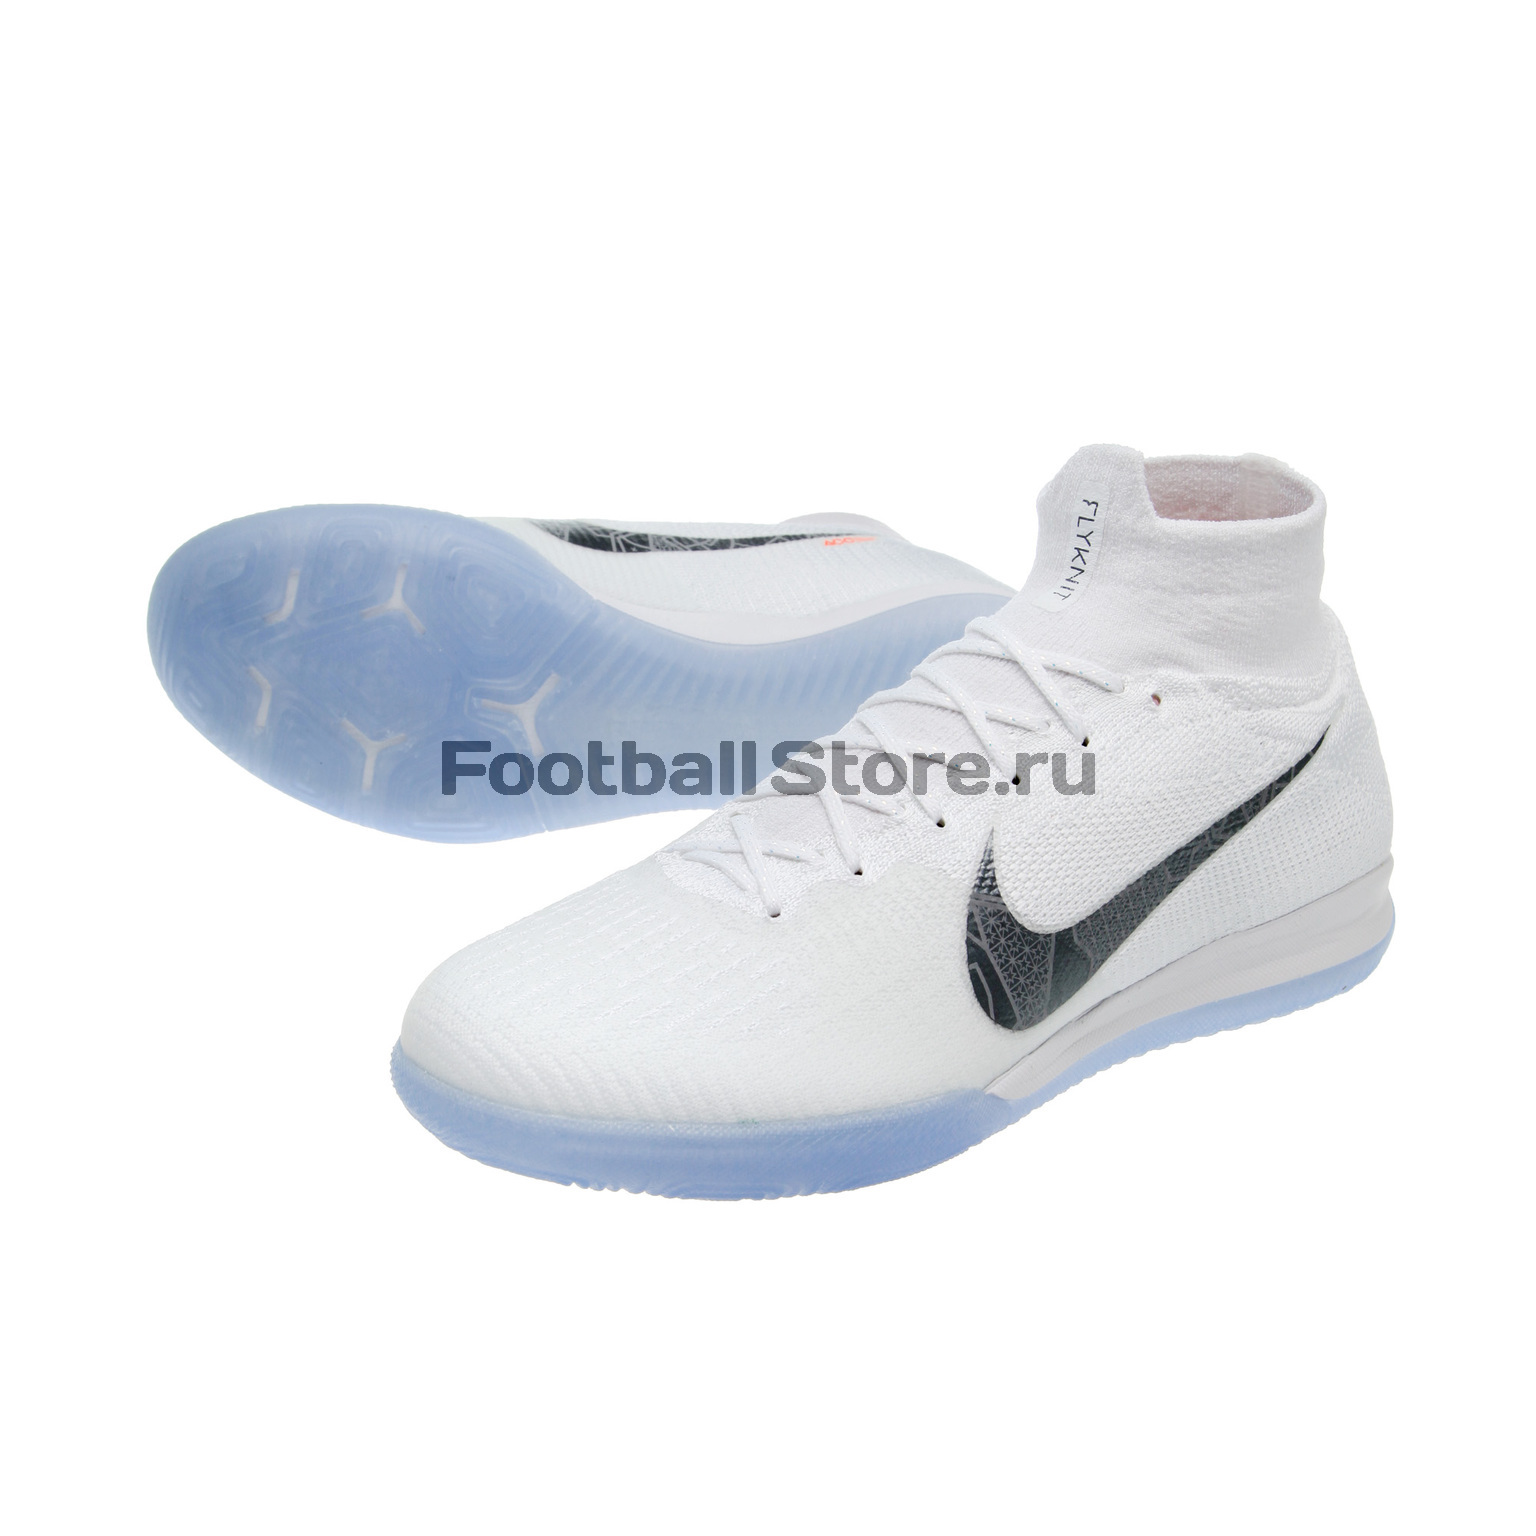 Обувь для зала Nike SuperflyX 6 Elite IC AH7373-107